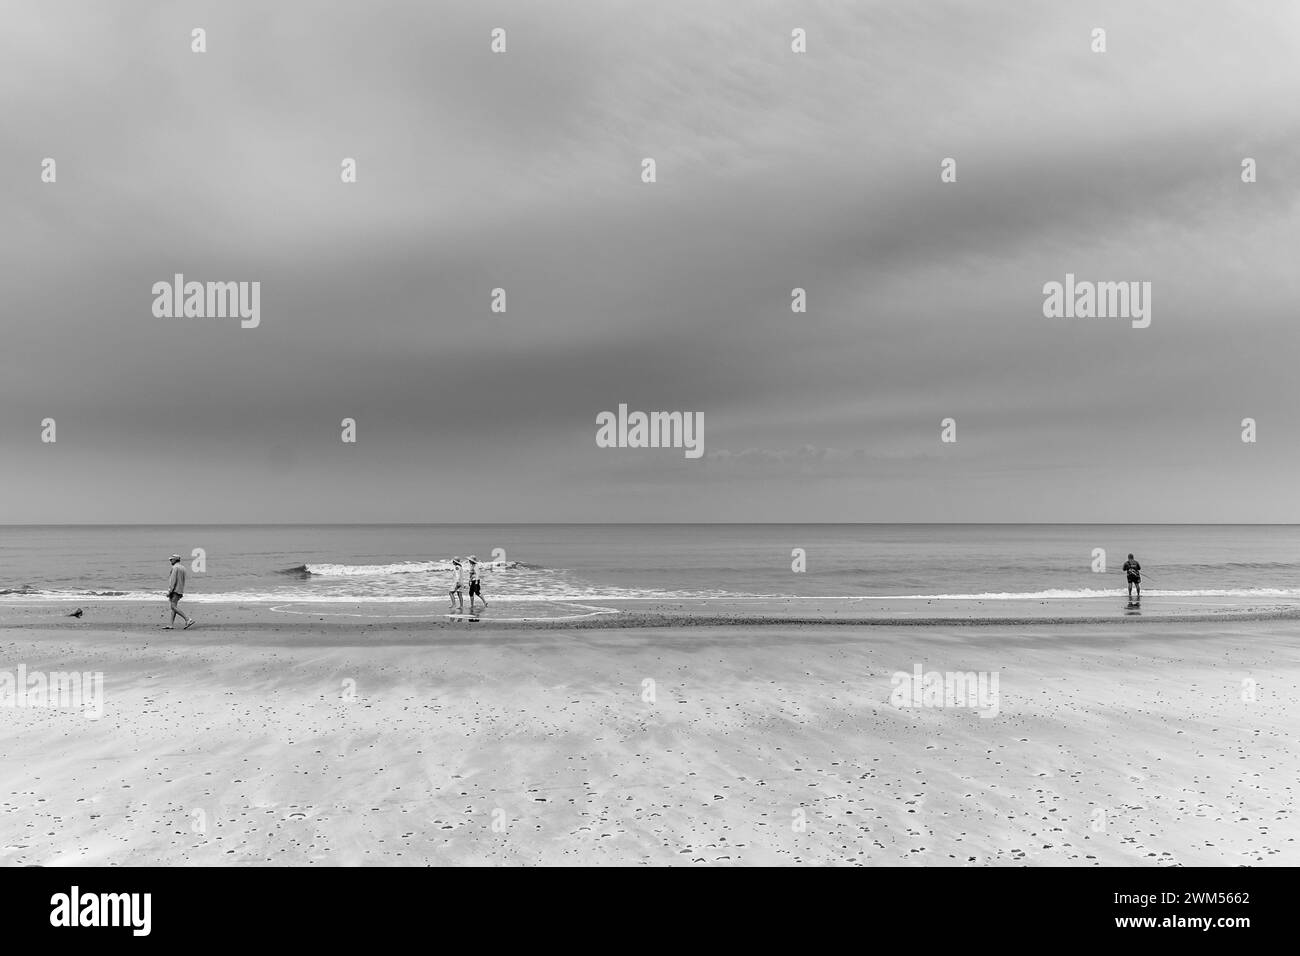 Gruppe von Menschen, die am Ufer entlang an einem Strand mit völlig bewölktem Himmel laufen Stockfoto